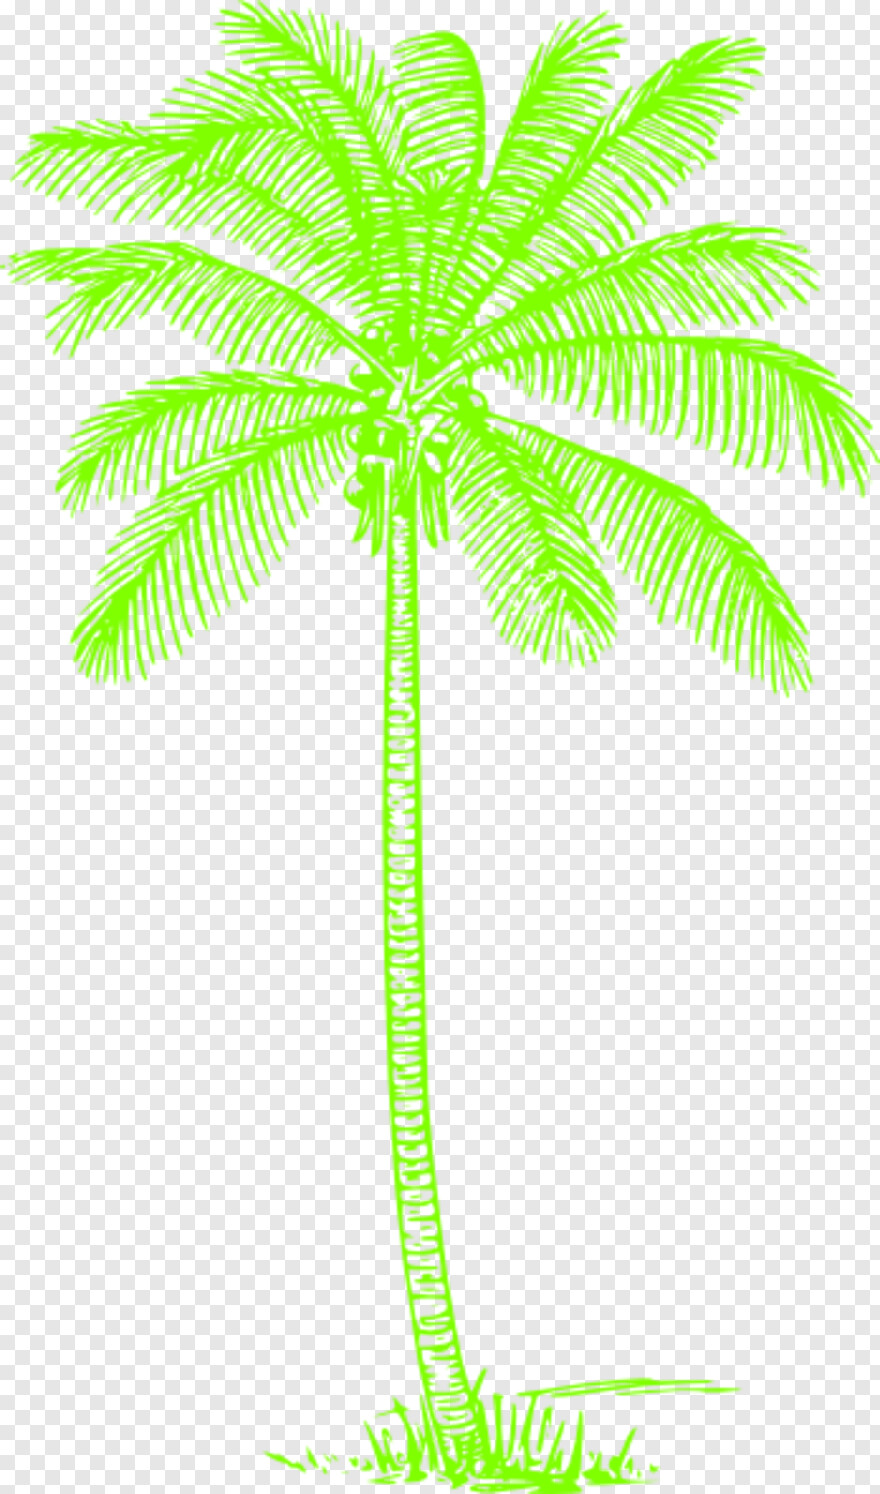 palm-tree # 460484